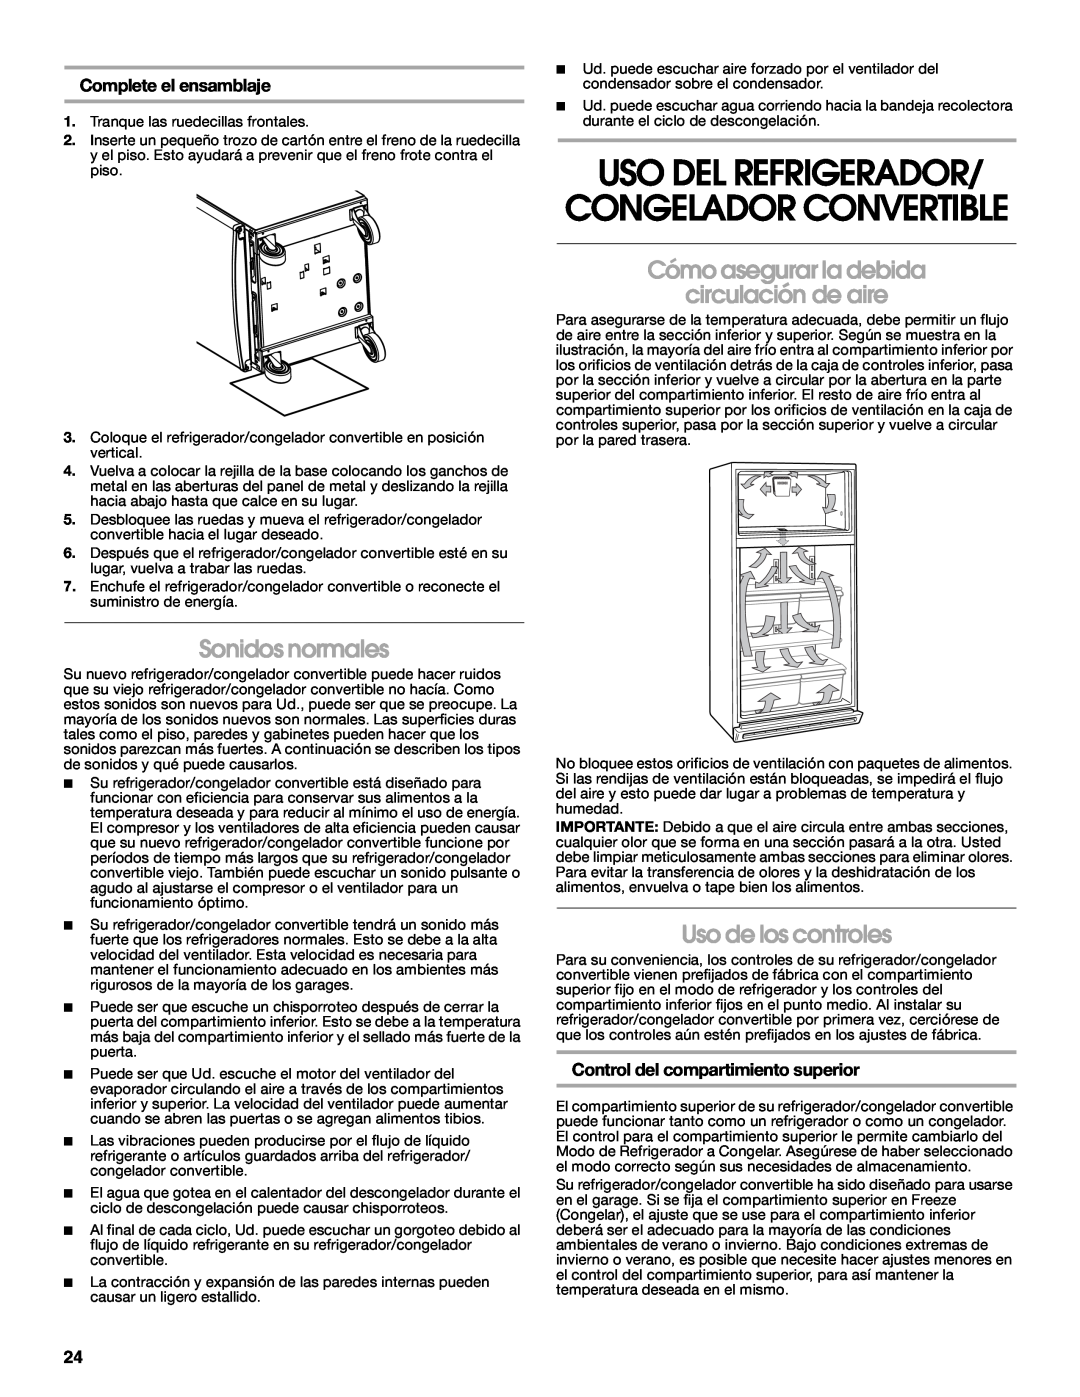 Whirlpool 2314466 manual Uso Del Refrigerador/ Congelador Convertible, Sonidos normales, Uso de los controles 